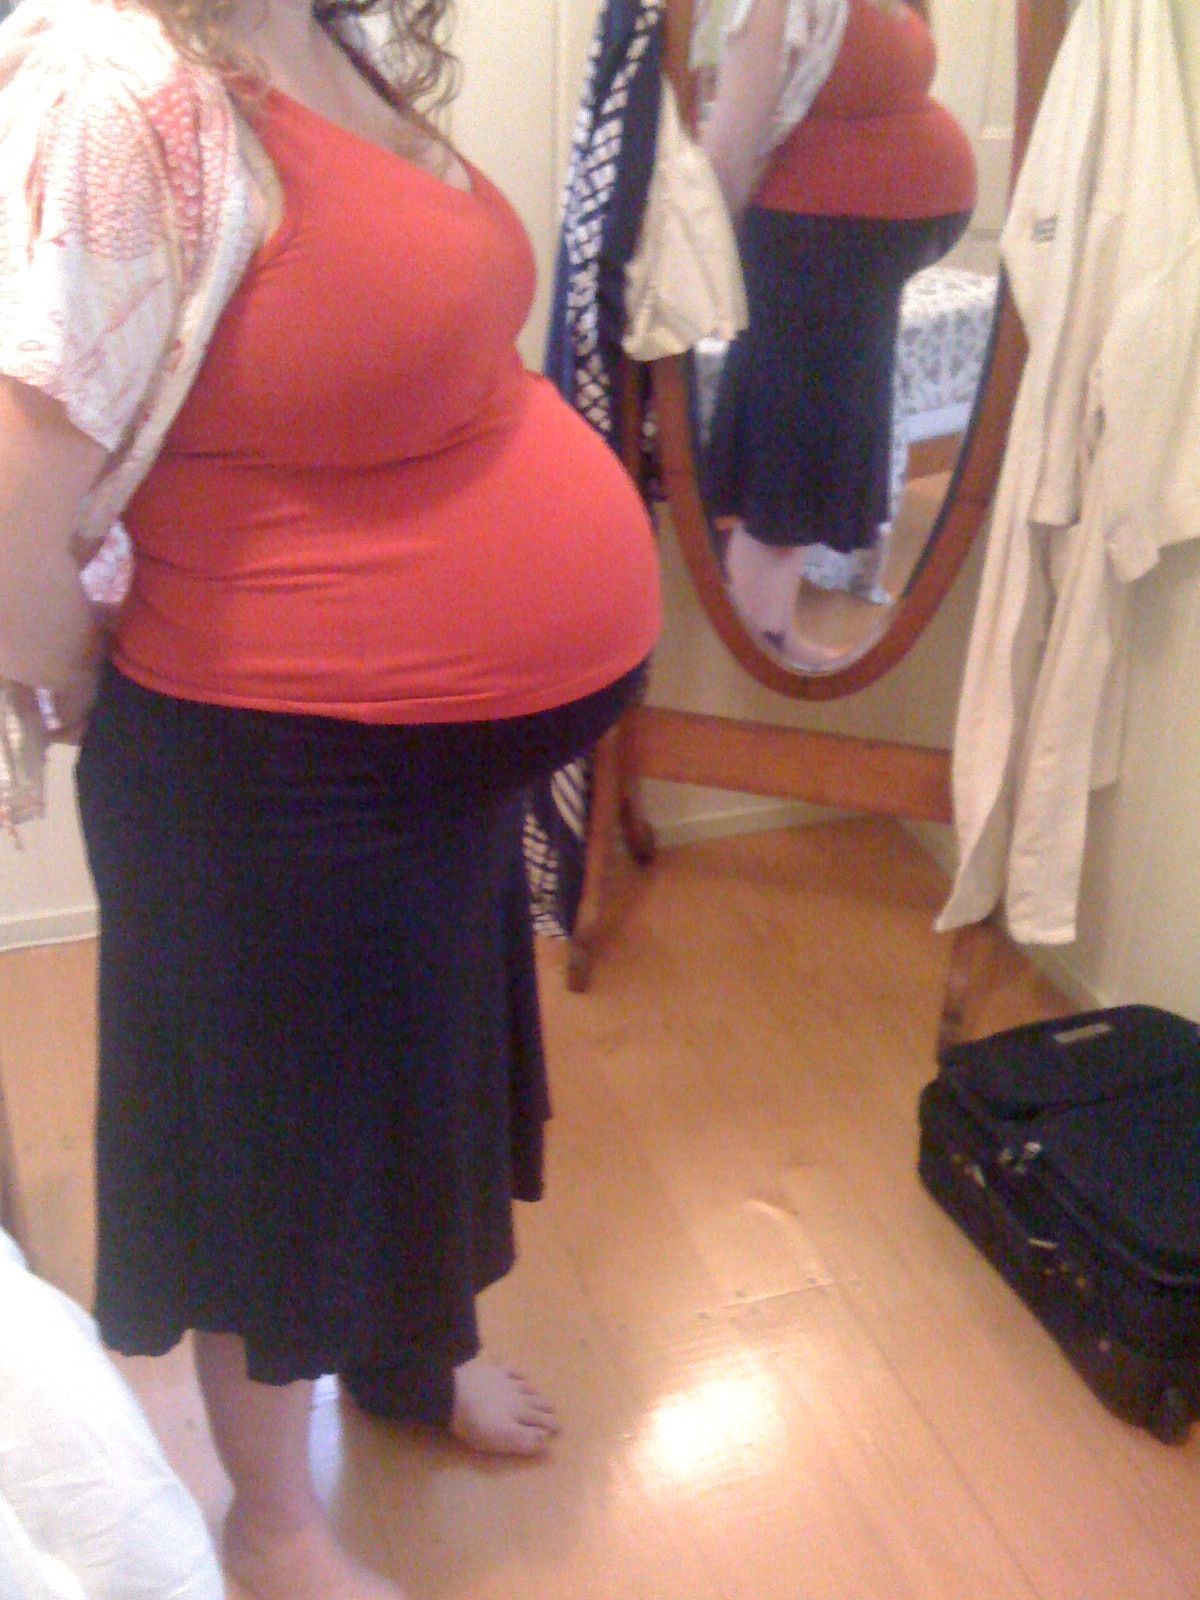 week 37 huge pregnant belly!